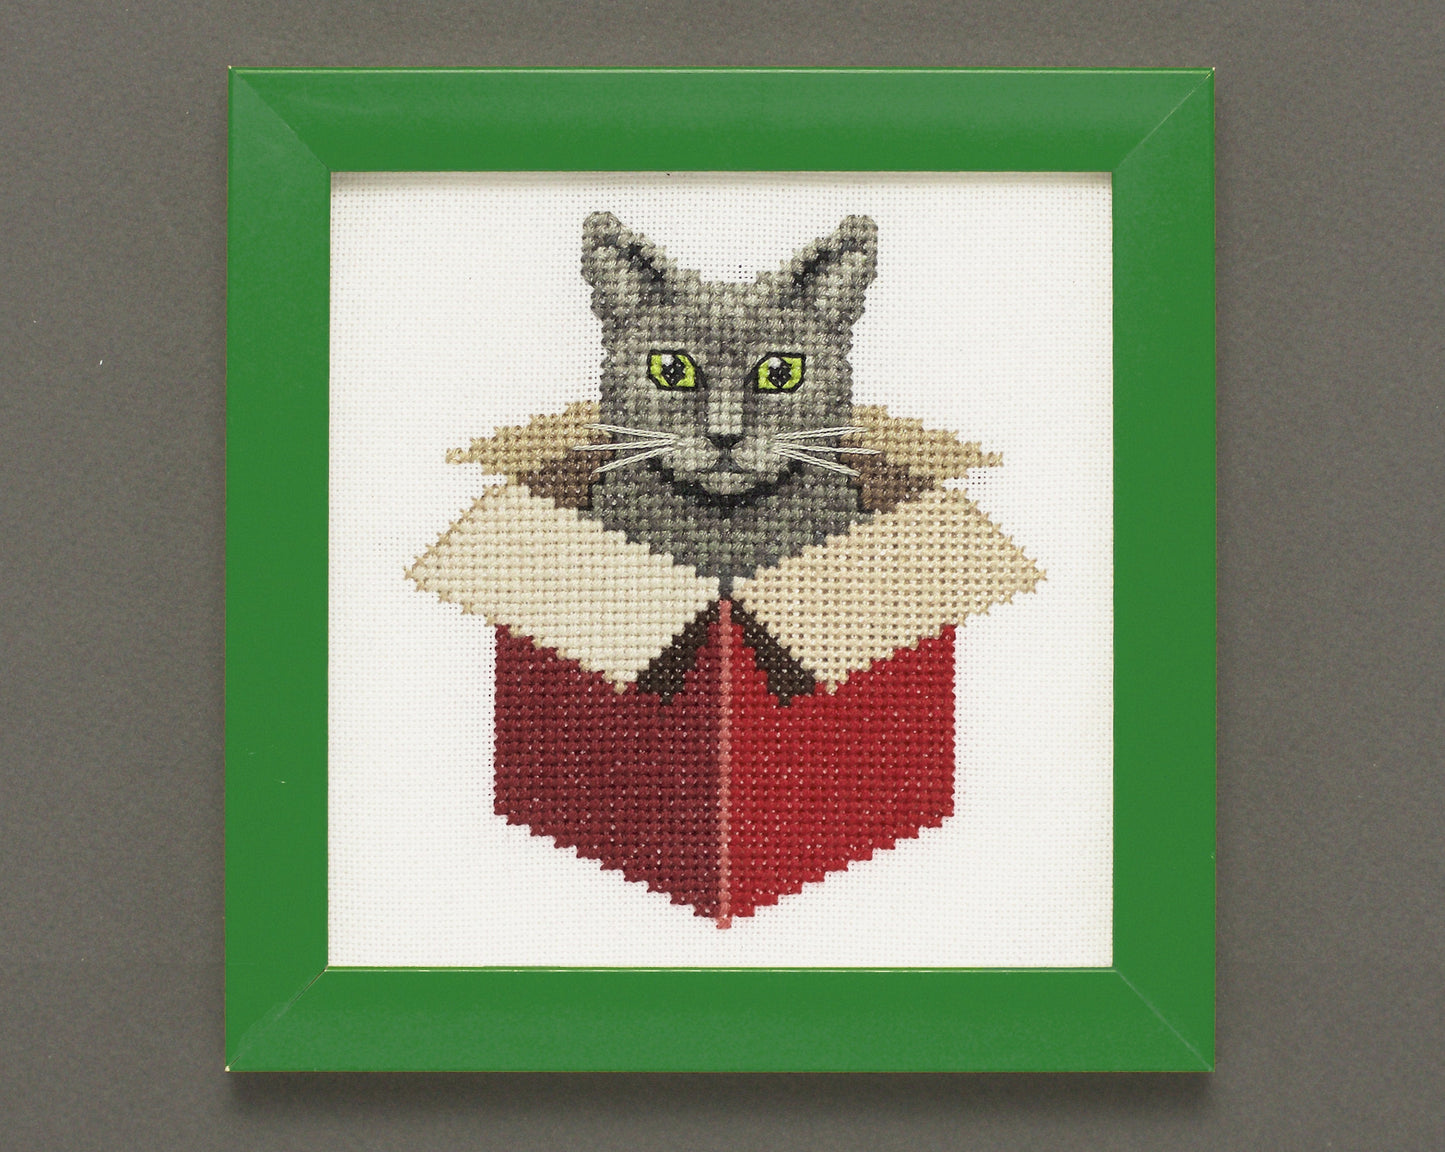 Just a Cat in a Box: Gray - Digital PDF Cross Stitch Pattern